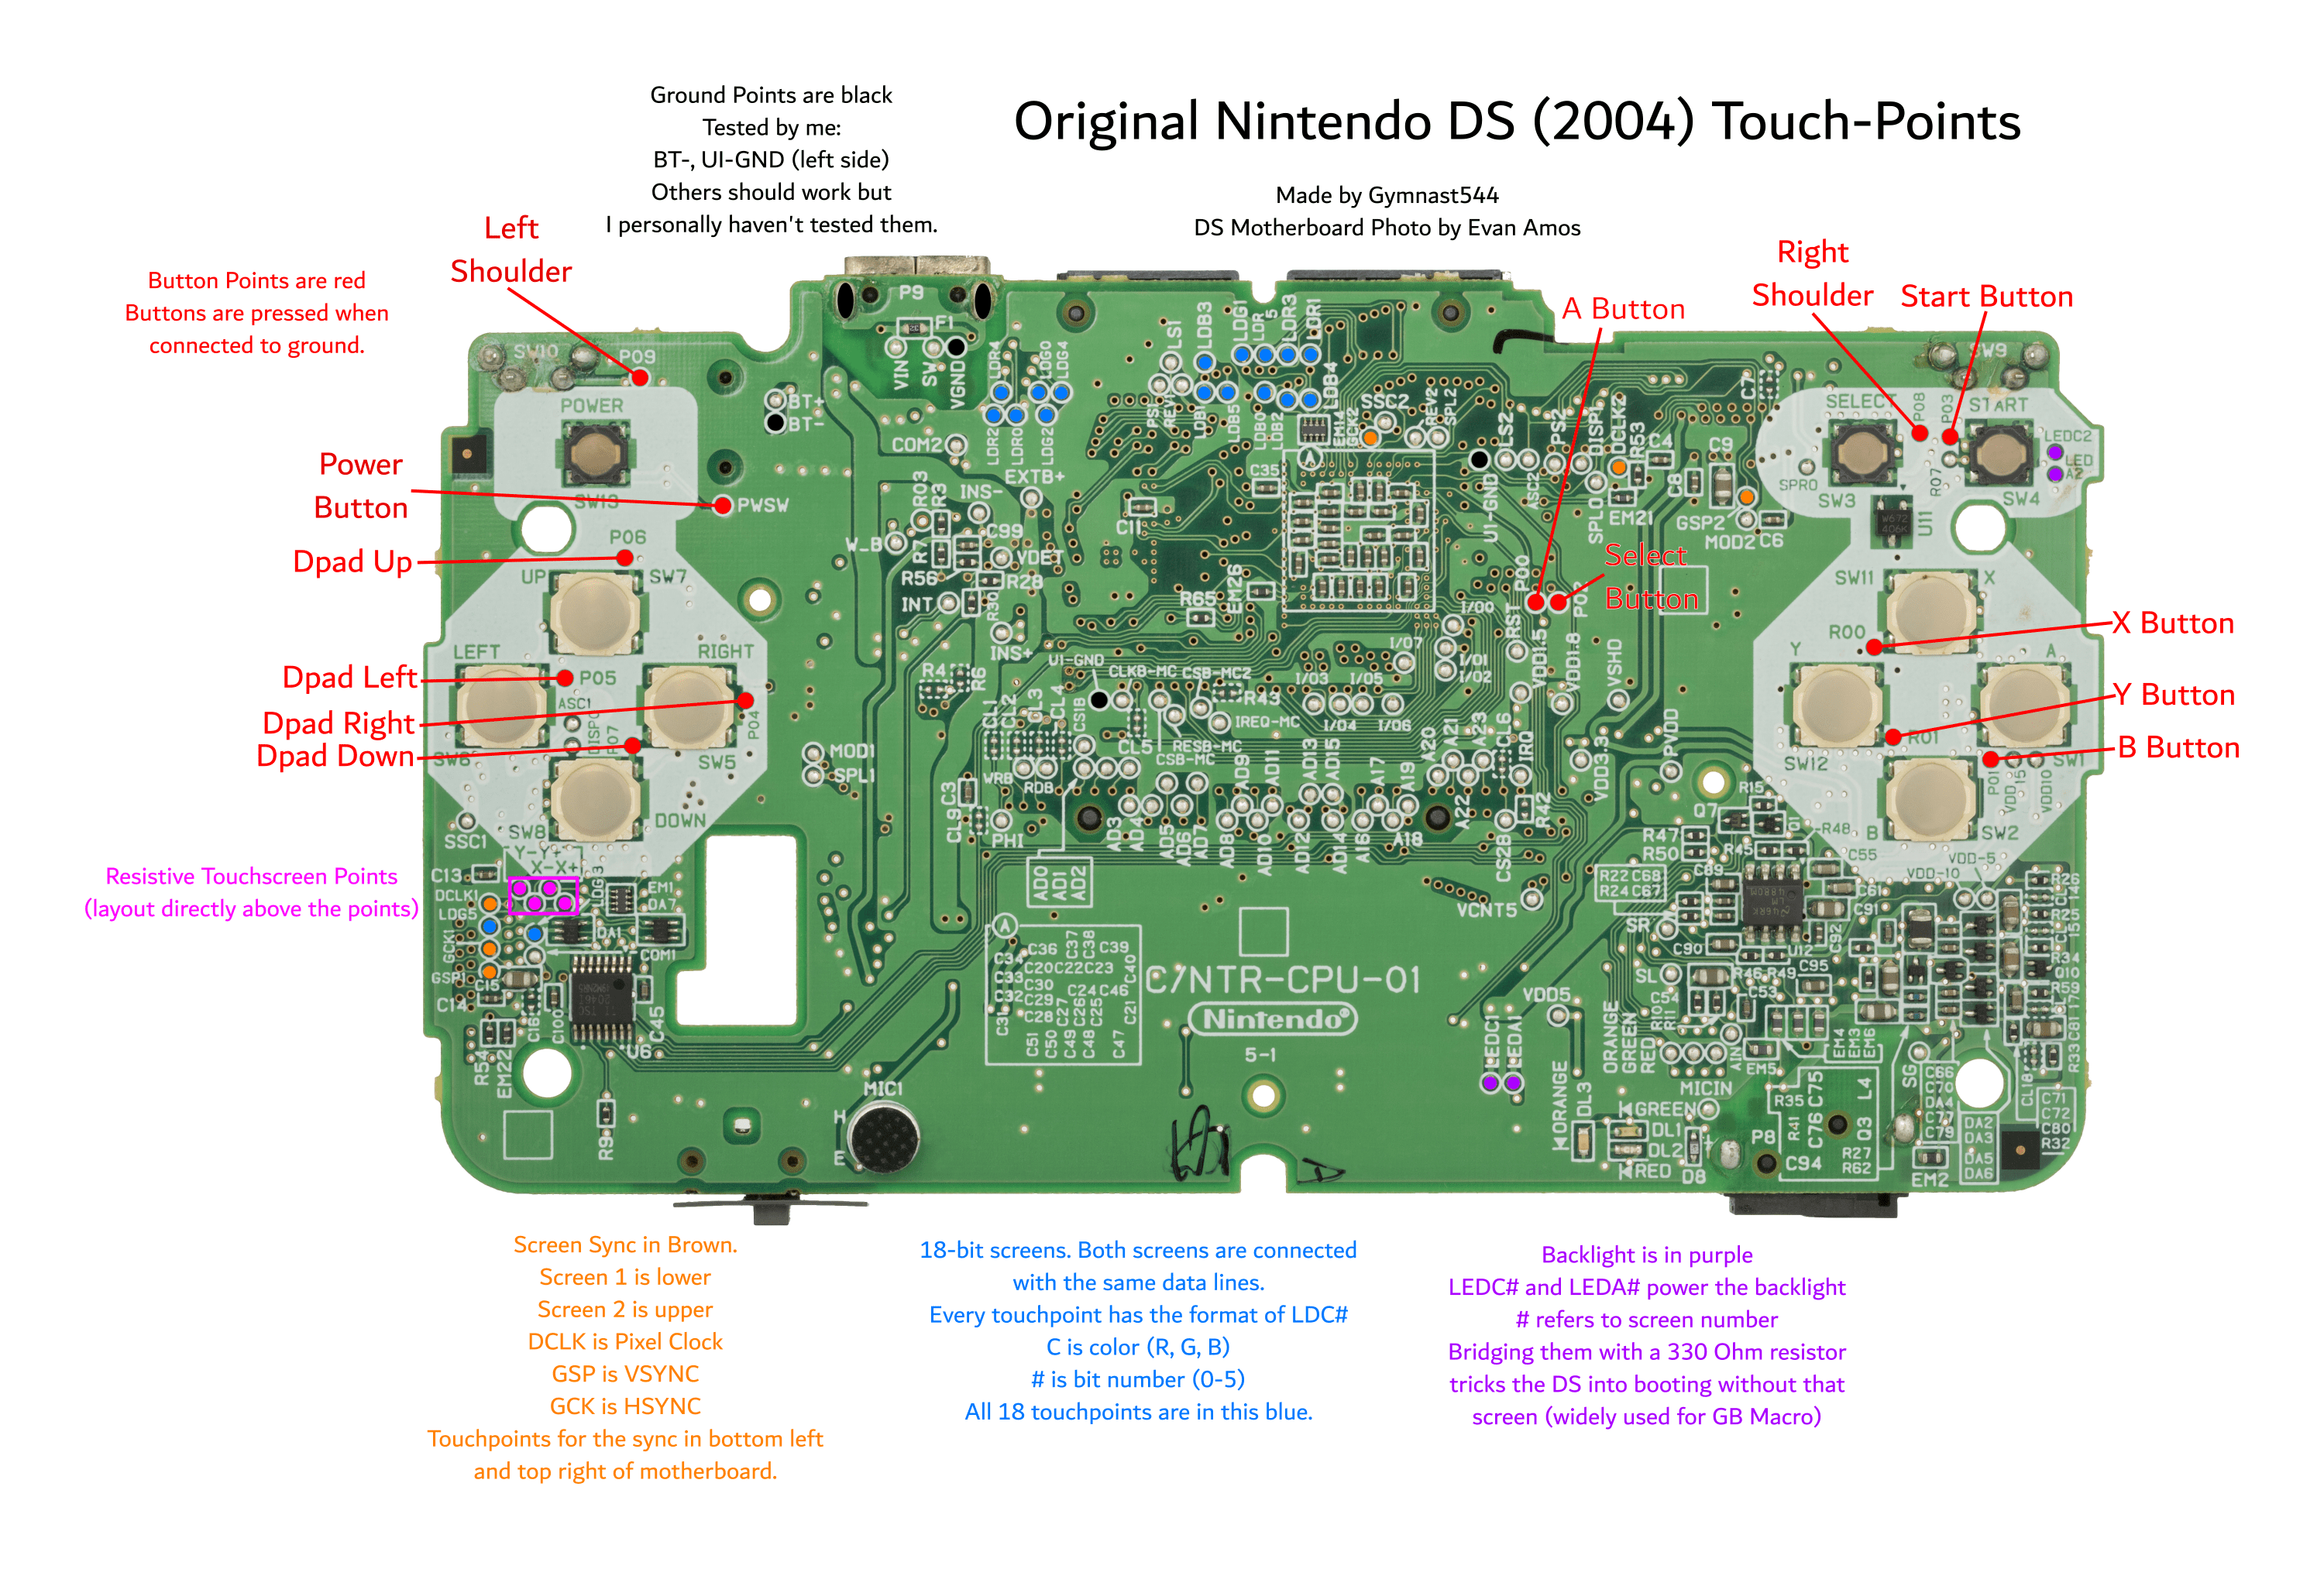 Original DS moderkort med touch-points märkta